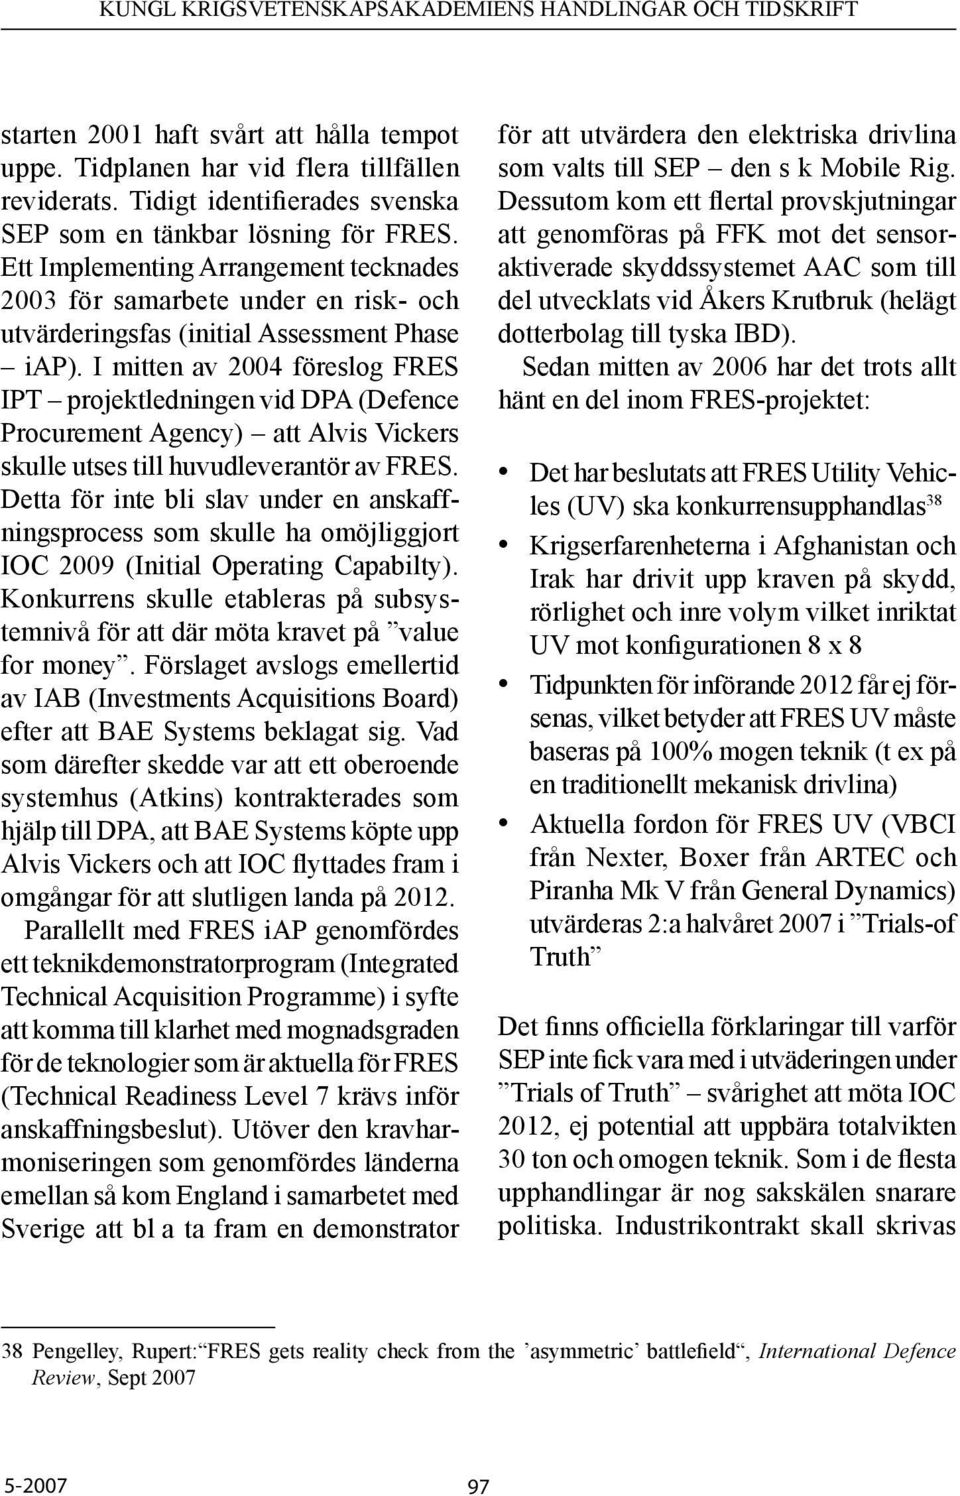 I mitten av 2004 föreslog FRES IPT projektledningen vid DPA (Defence Procurement Agency) att Alvis Vickers skulle utses till huvudleverantör av FRES.